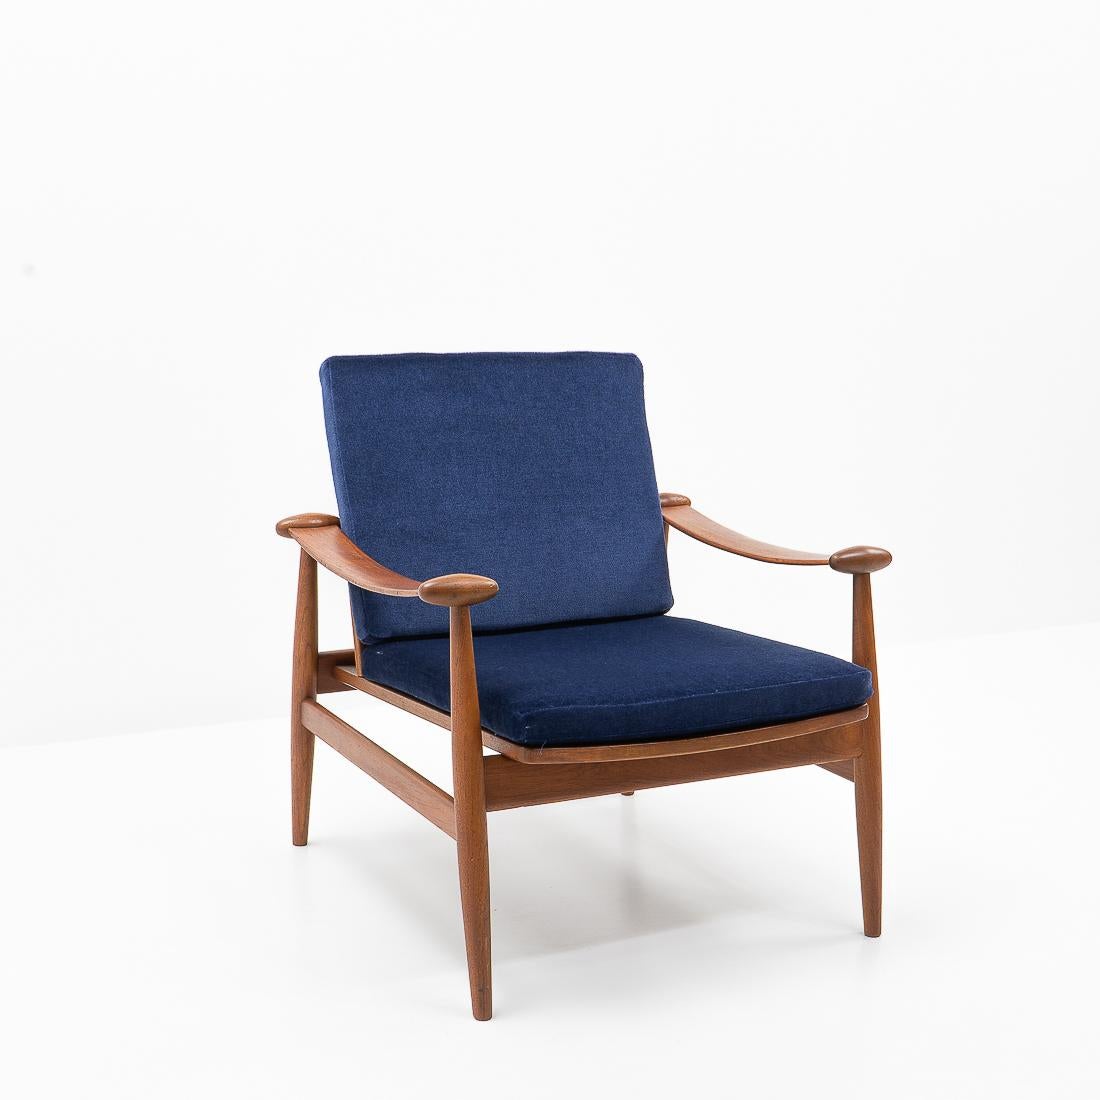 Mid-Century Modern 1950s Danish Design Classic Finn Juhl “Spade” Armchair, Upholstered in Mohair For Sale